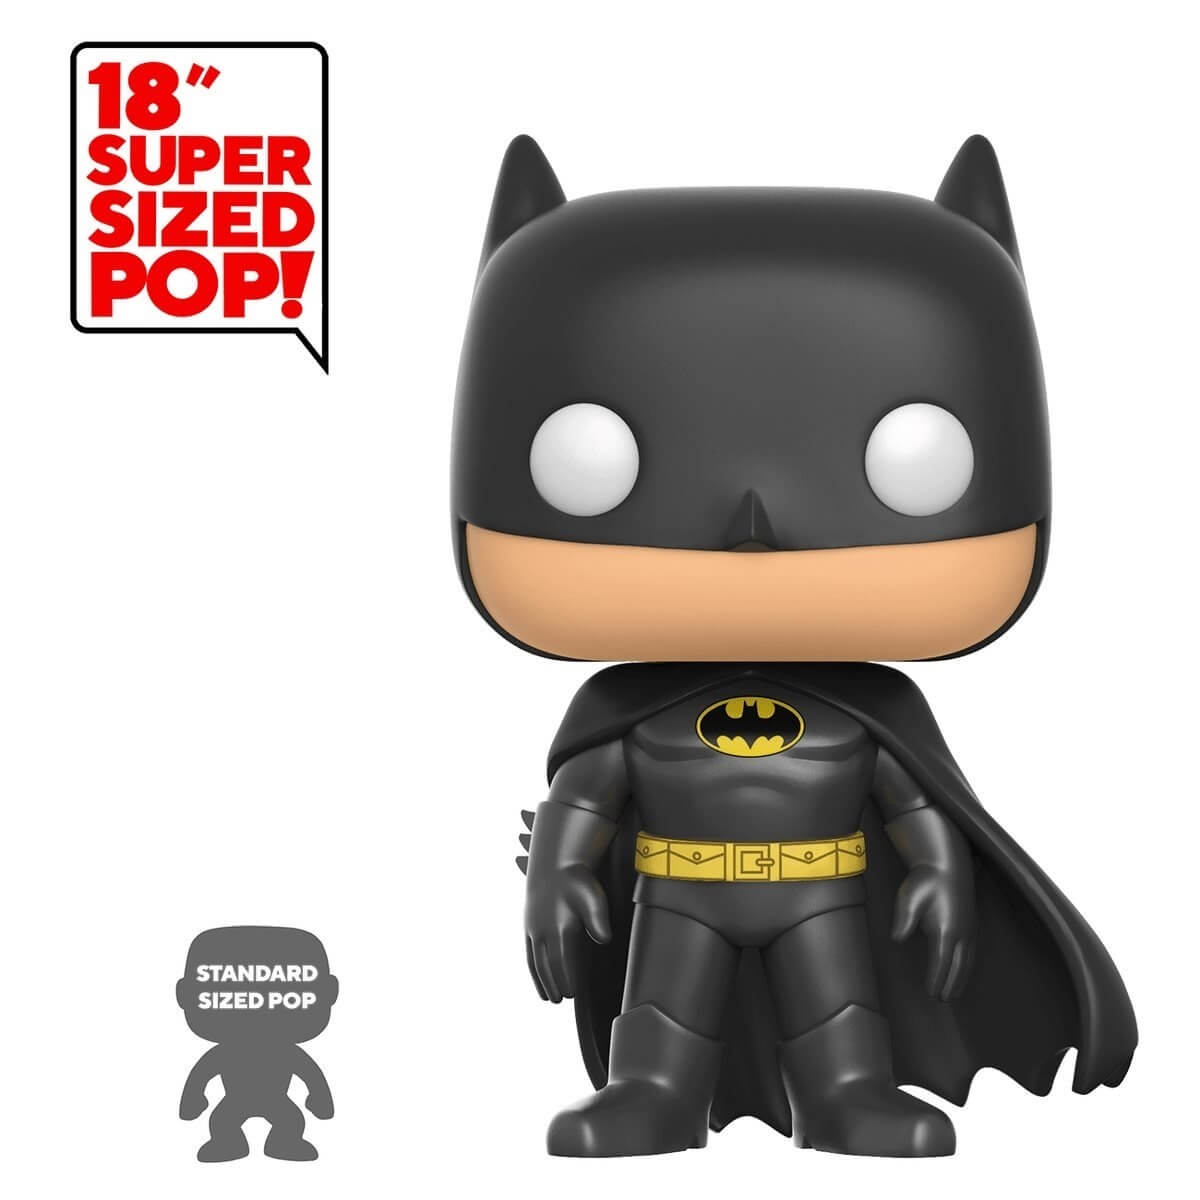 aanvaardbaar regeling organiseren Koop Funko POP! - Super Sized Figure - Batman 45 cm (DC Universe: Batman)  (42122) - Black